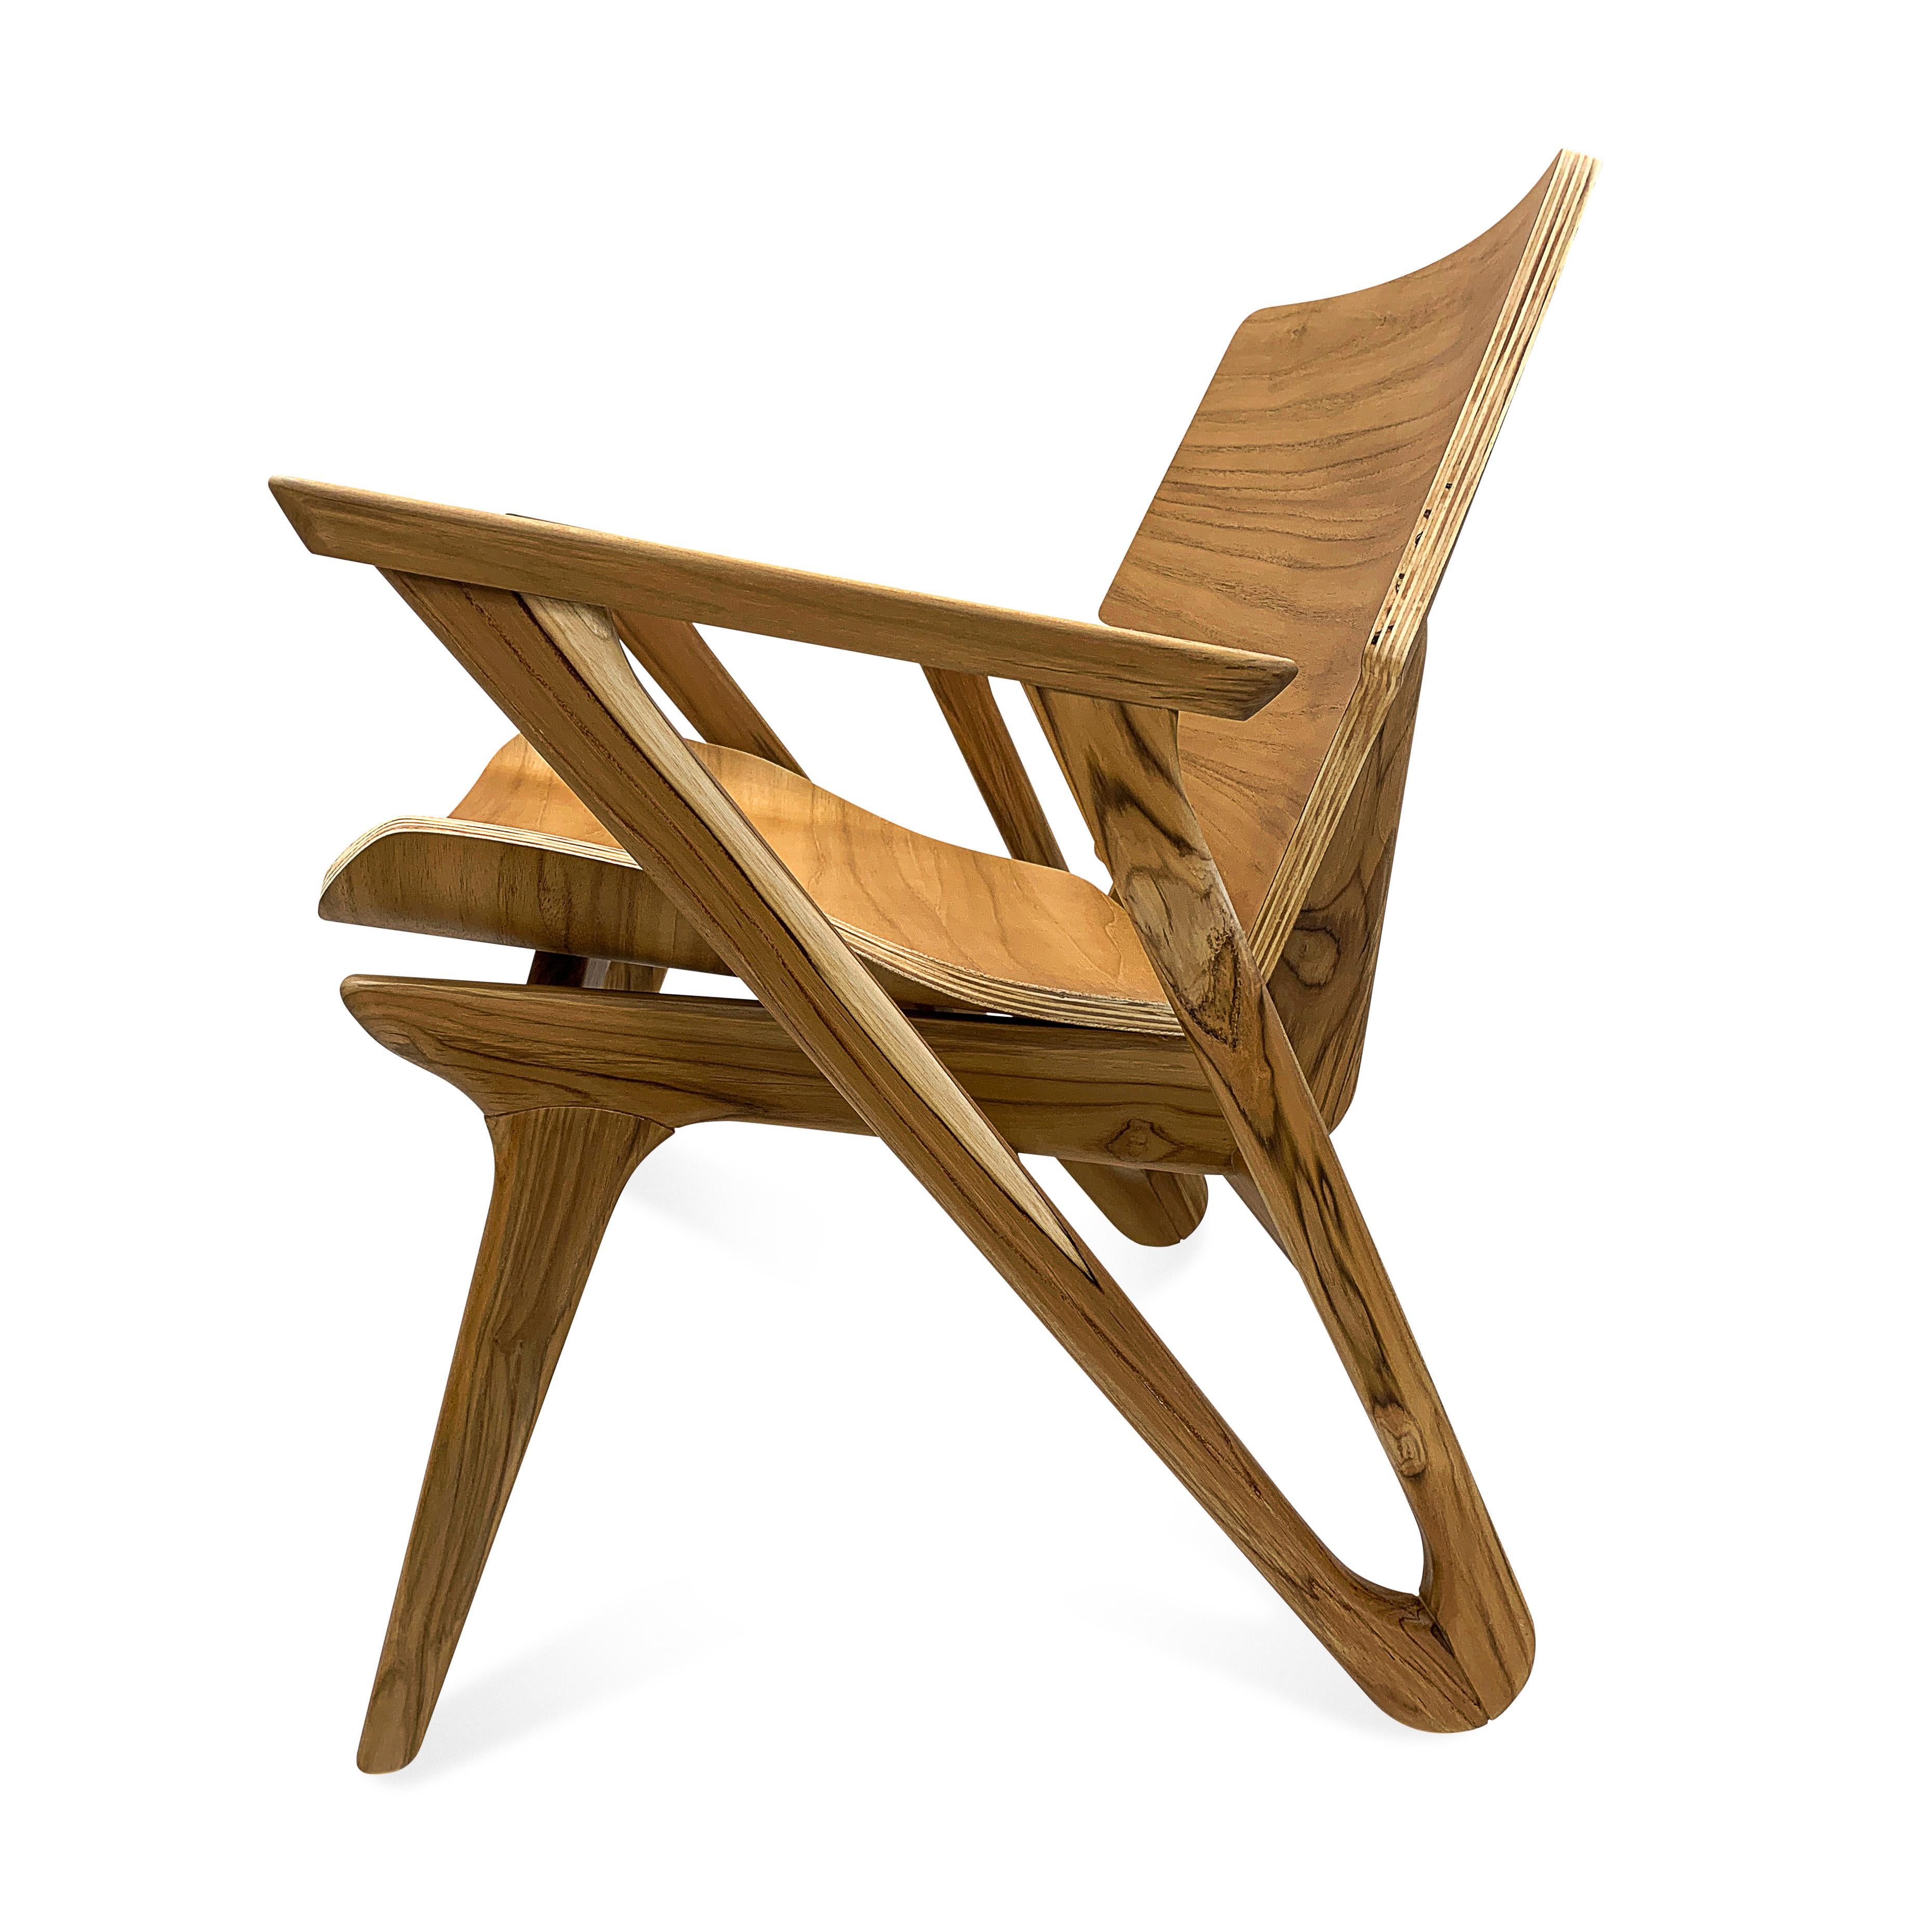 Ce fauteuil minimaliste Velo avec une assise et un dossier en forme, présente un design simple et épuré, avec des formes géométriques et une assise incurvée avec un coin doux et fort qui met l'accent sur la simplicité et la fonctionnalité dans une